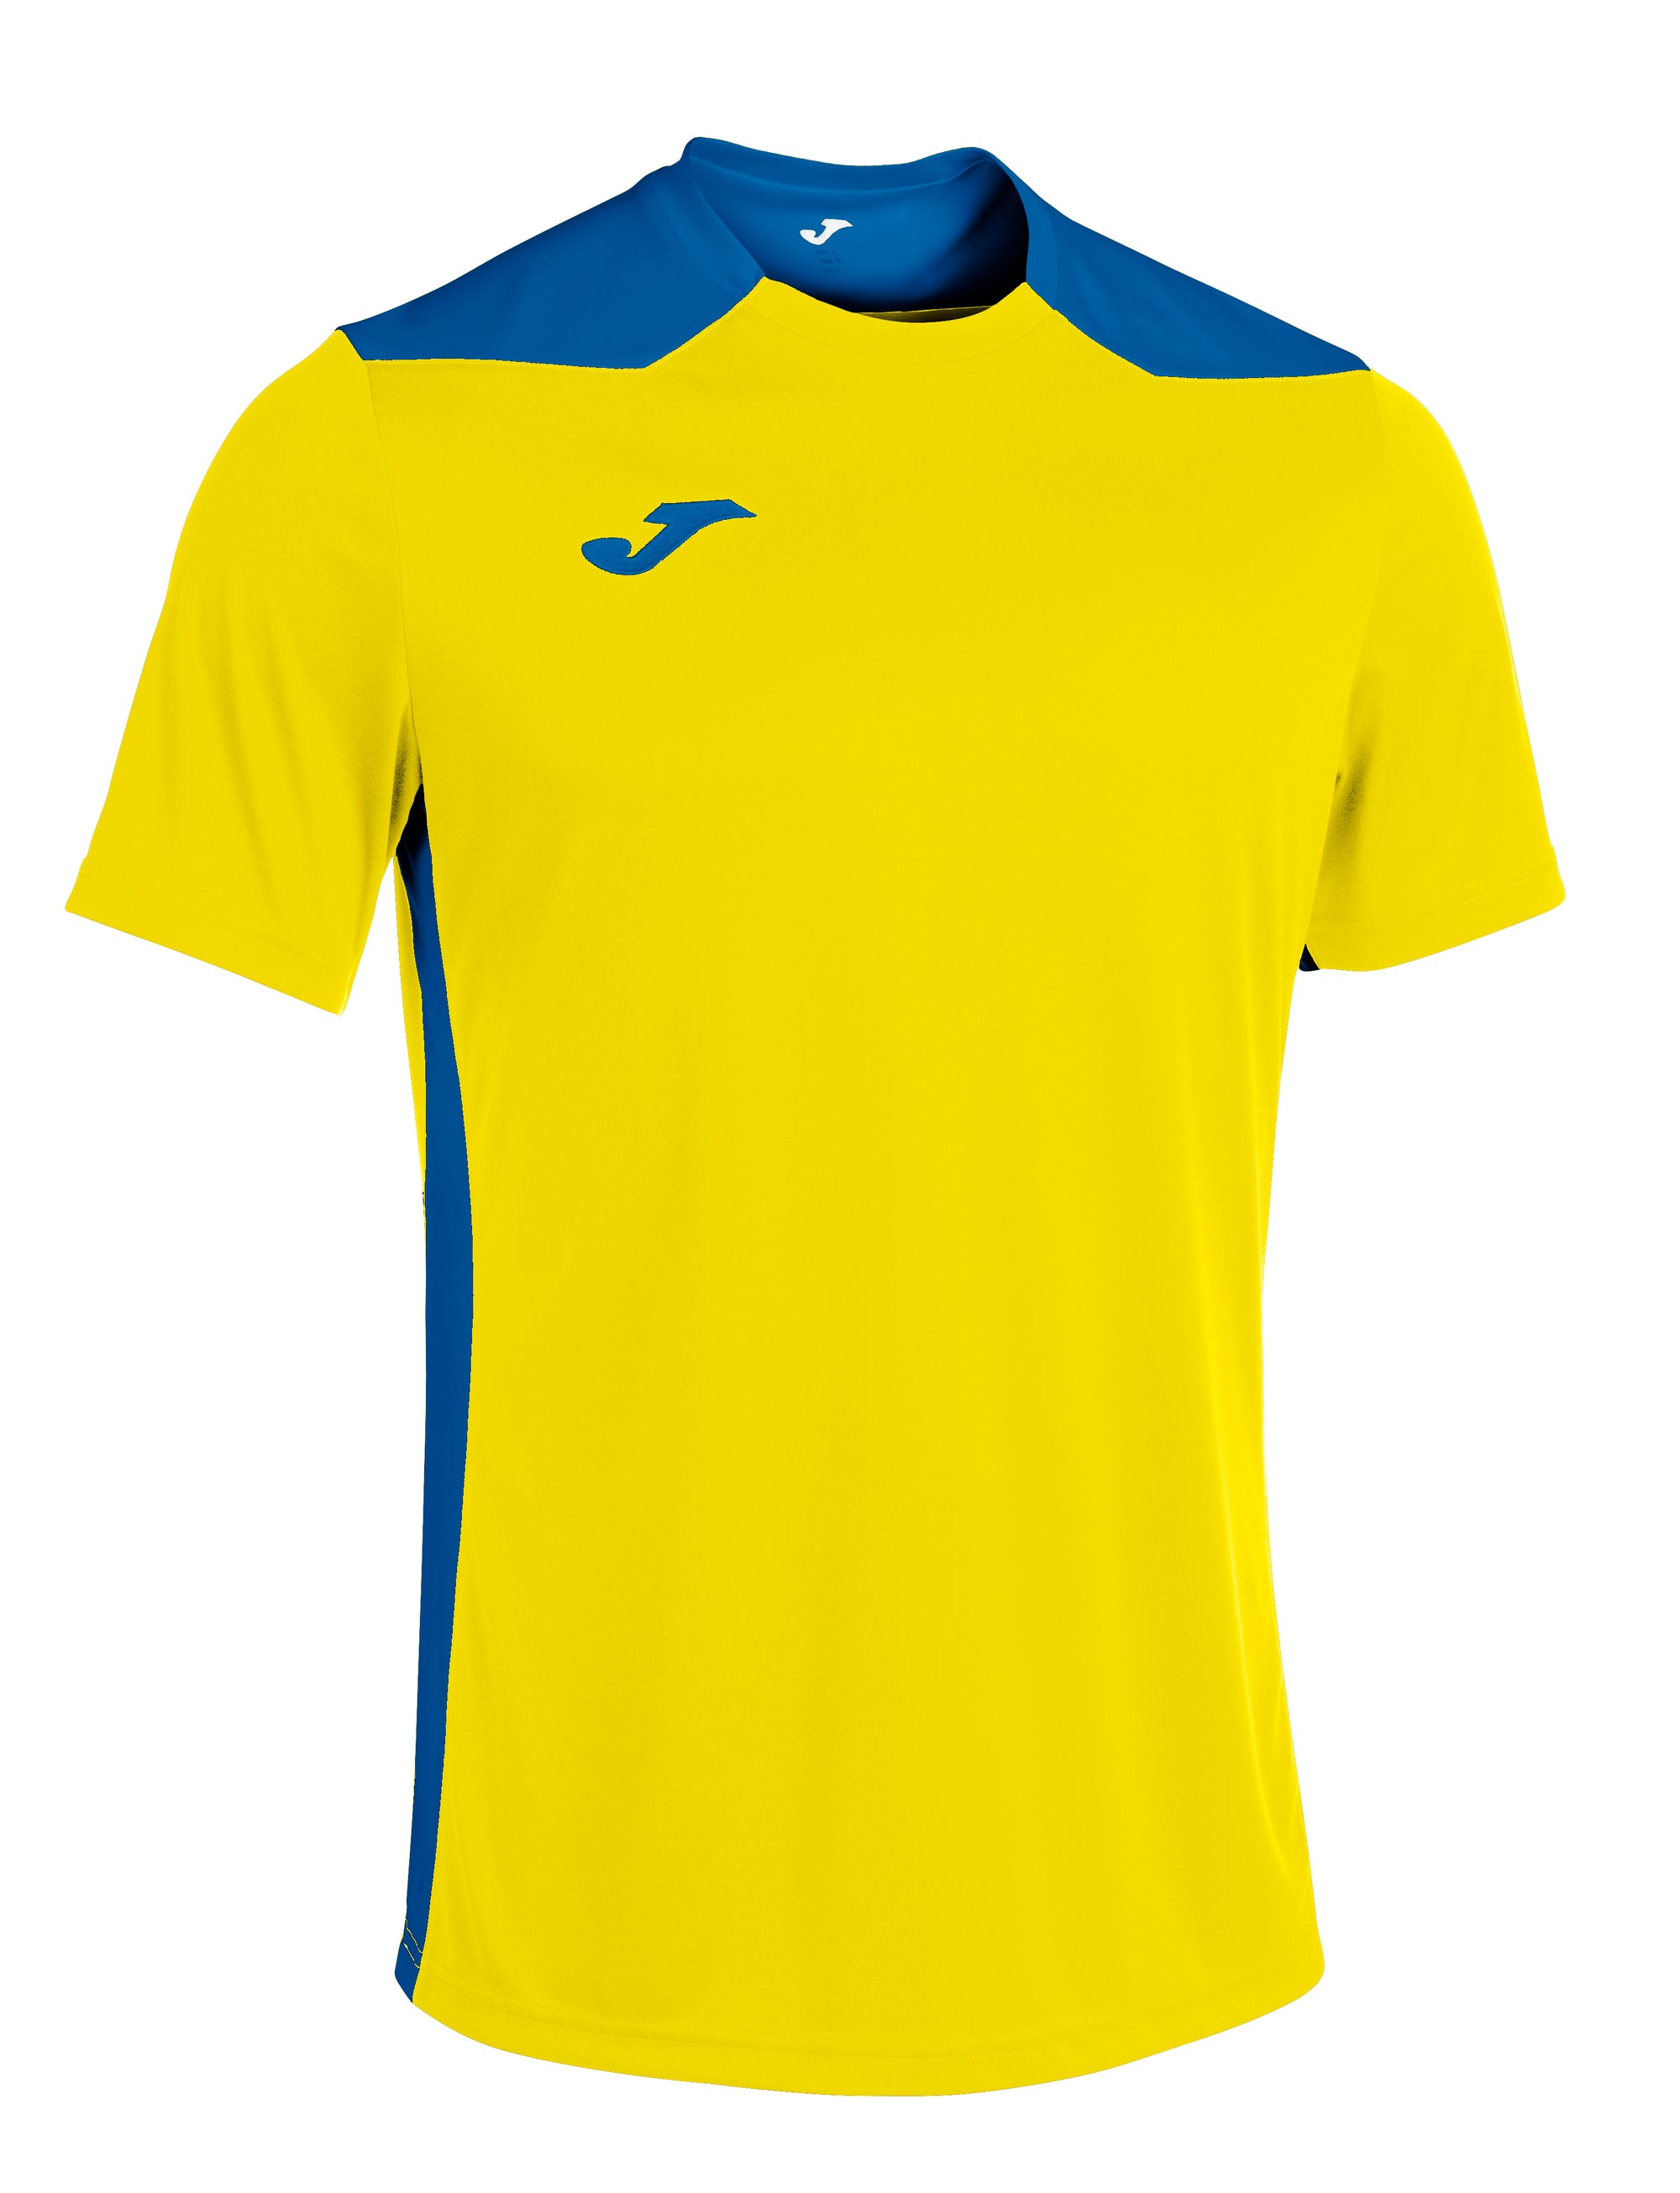 Joma Championship VI Short Sleeved T-Shirt - Yellow/Royal